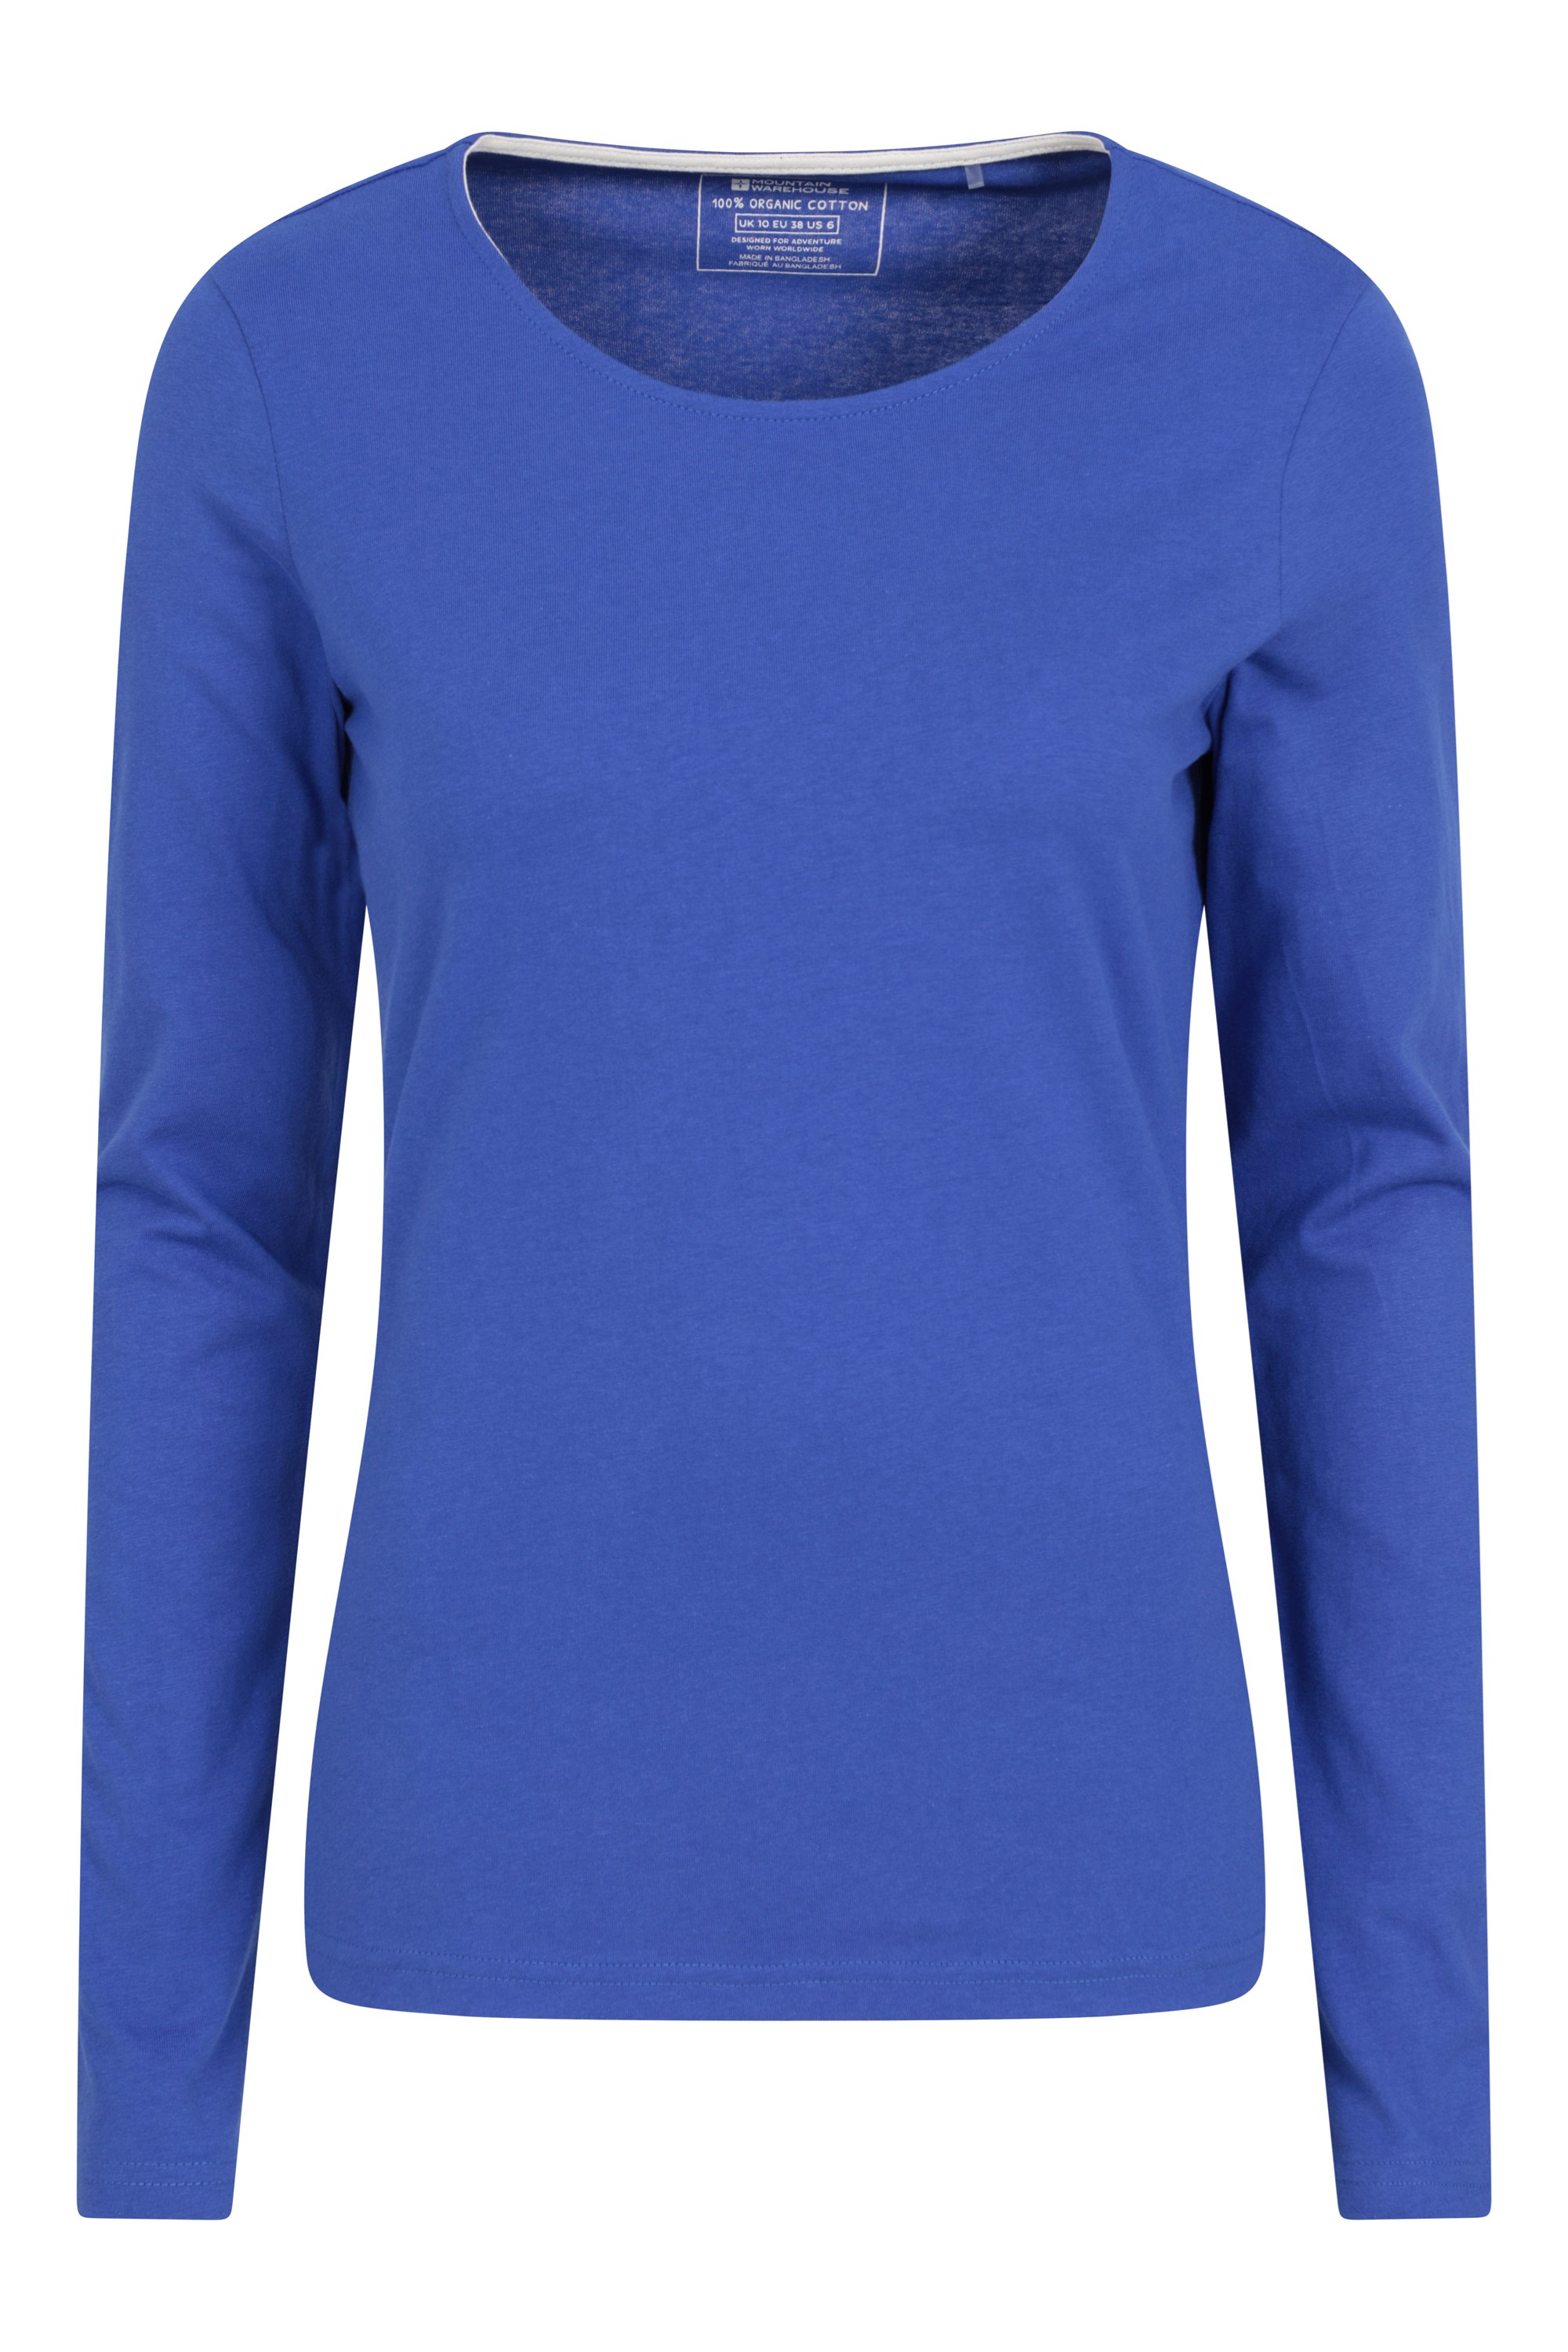 Eden damski organiczny t-shirt z okrągłym dekoltem - Blue